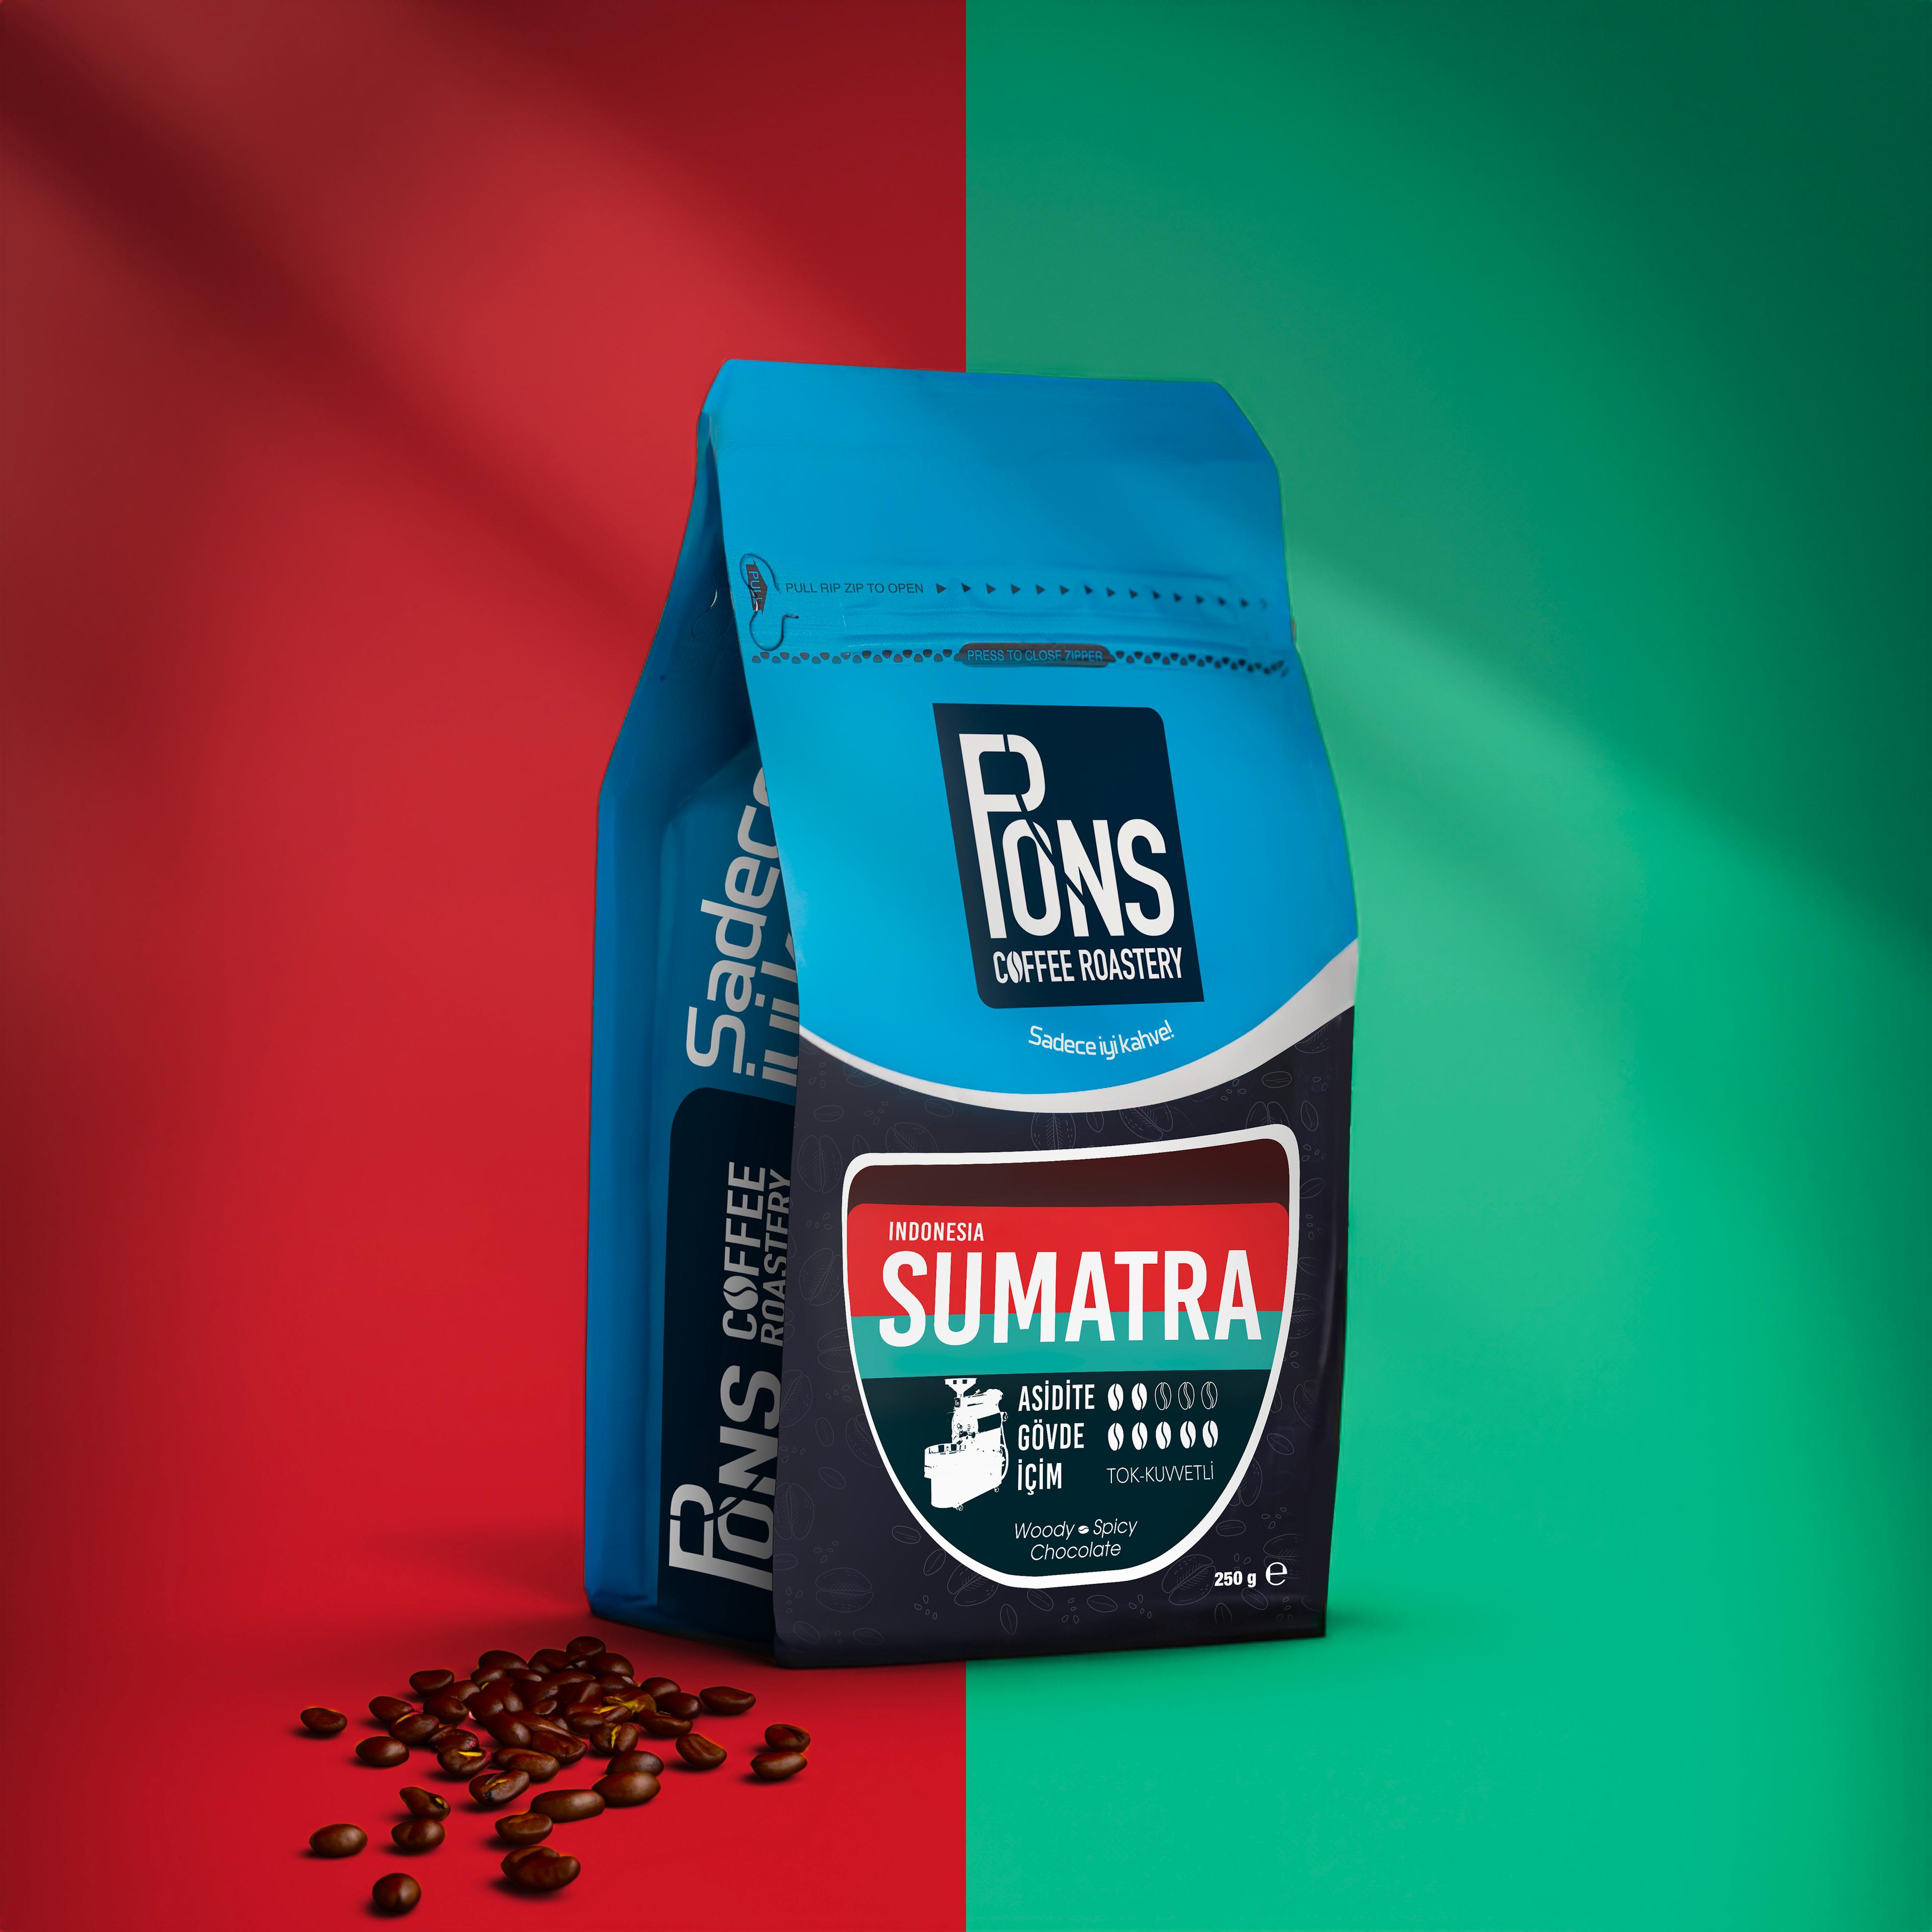 Indonesia Sumatra - Bambaşka Bir Kahve Deneyimi